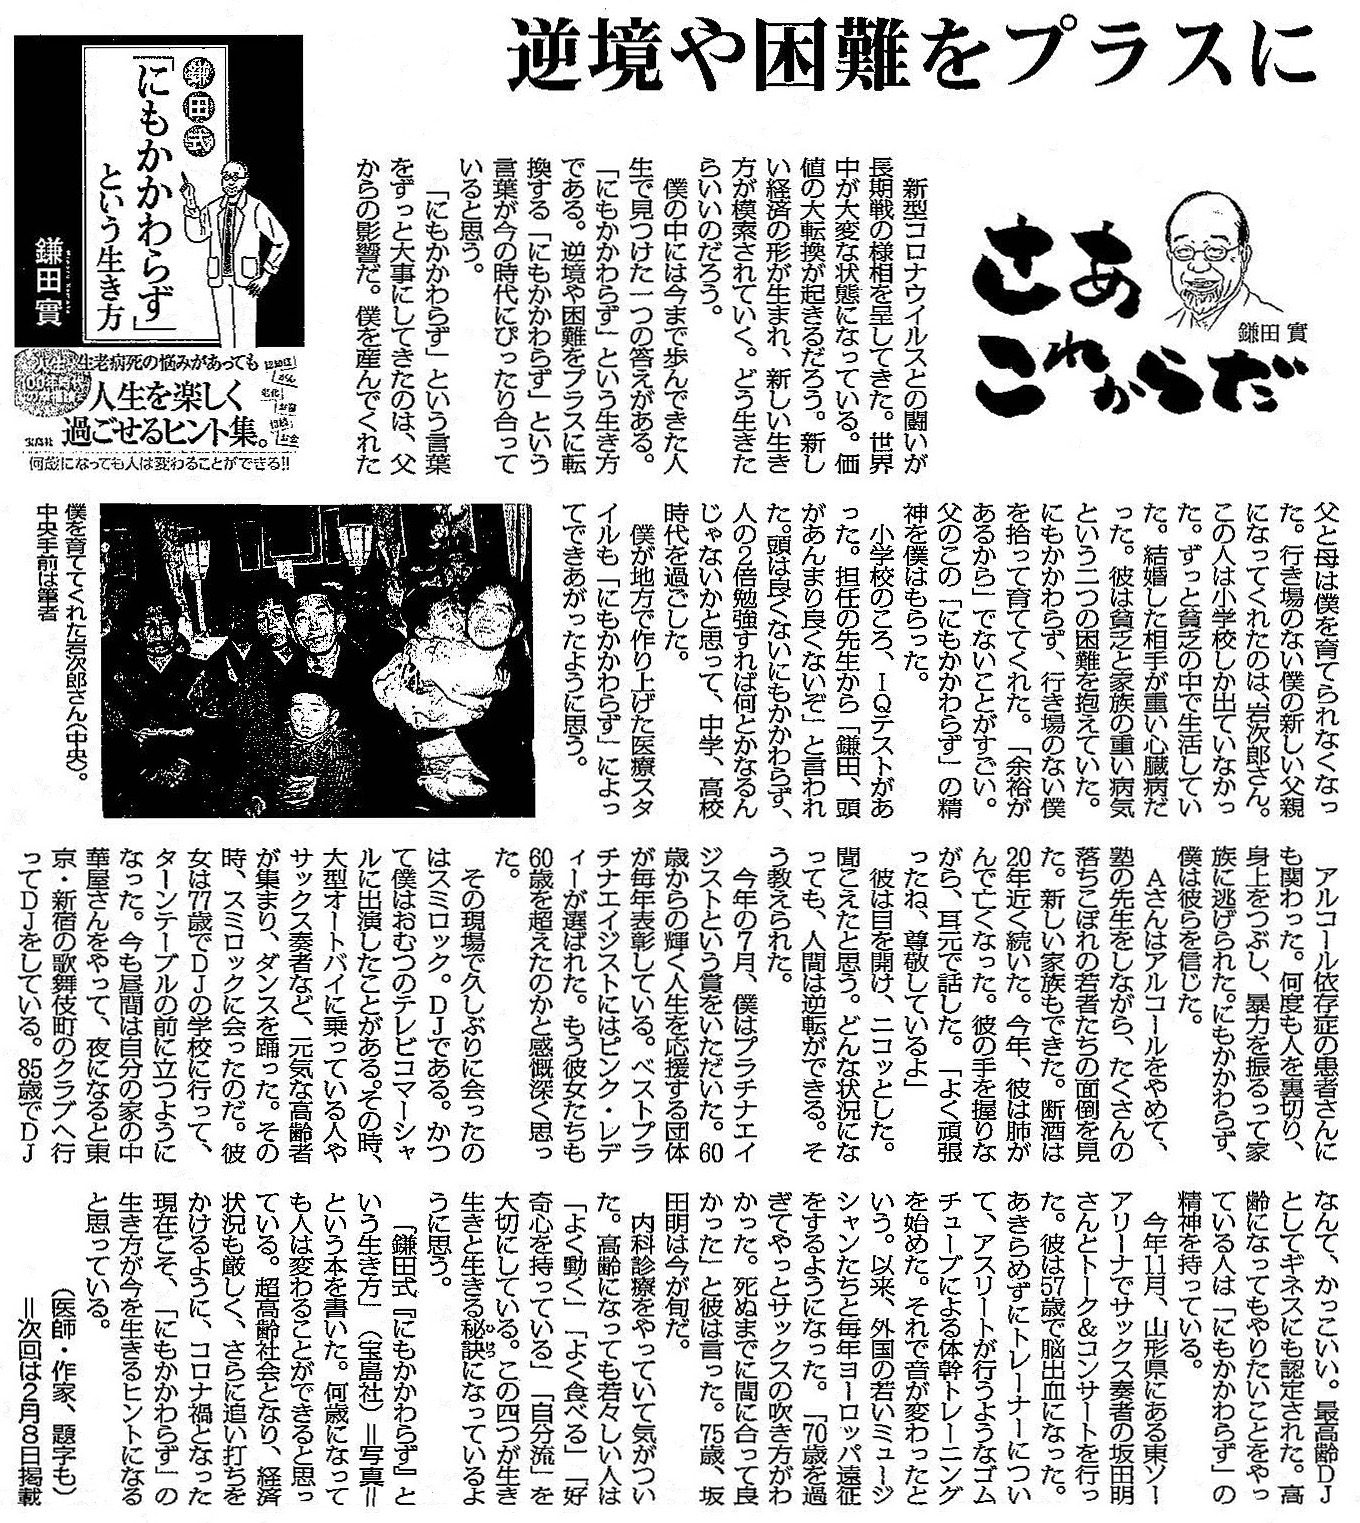 読売新聞 2020年12月13日掲載記事